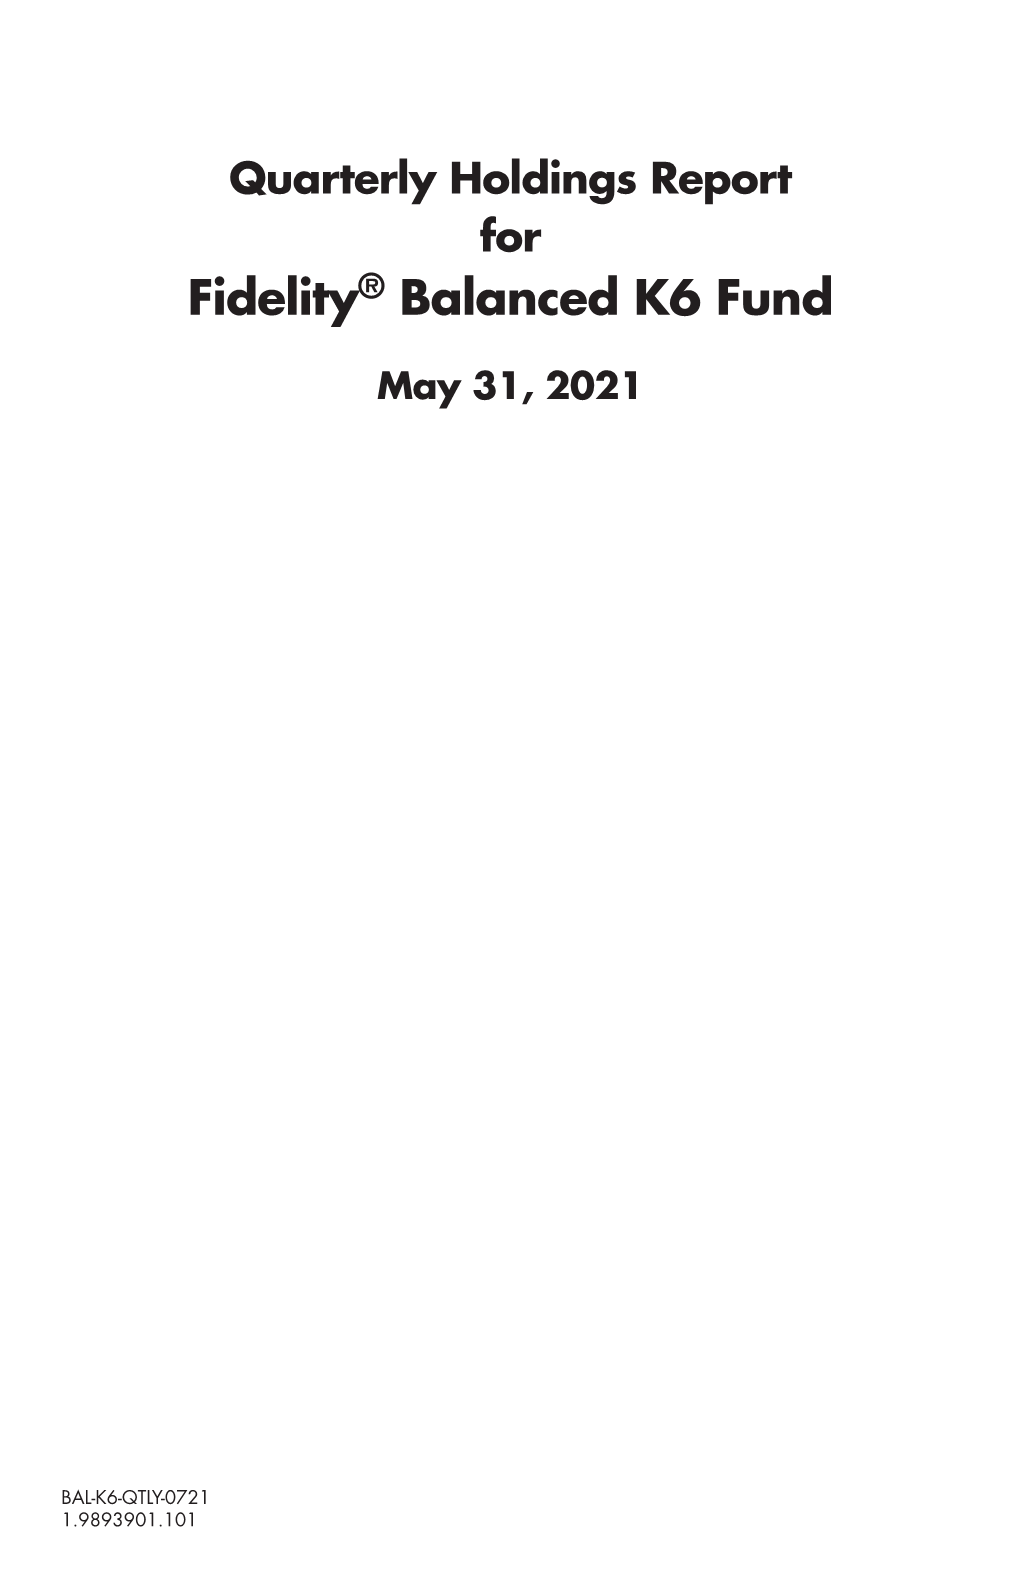 Fidelity® Balanced K6 Fund